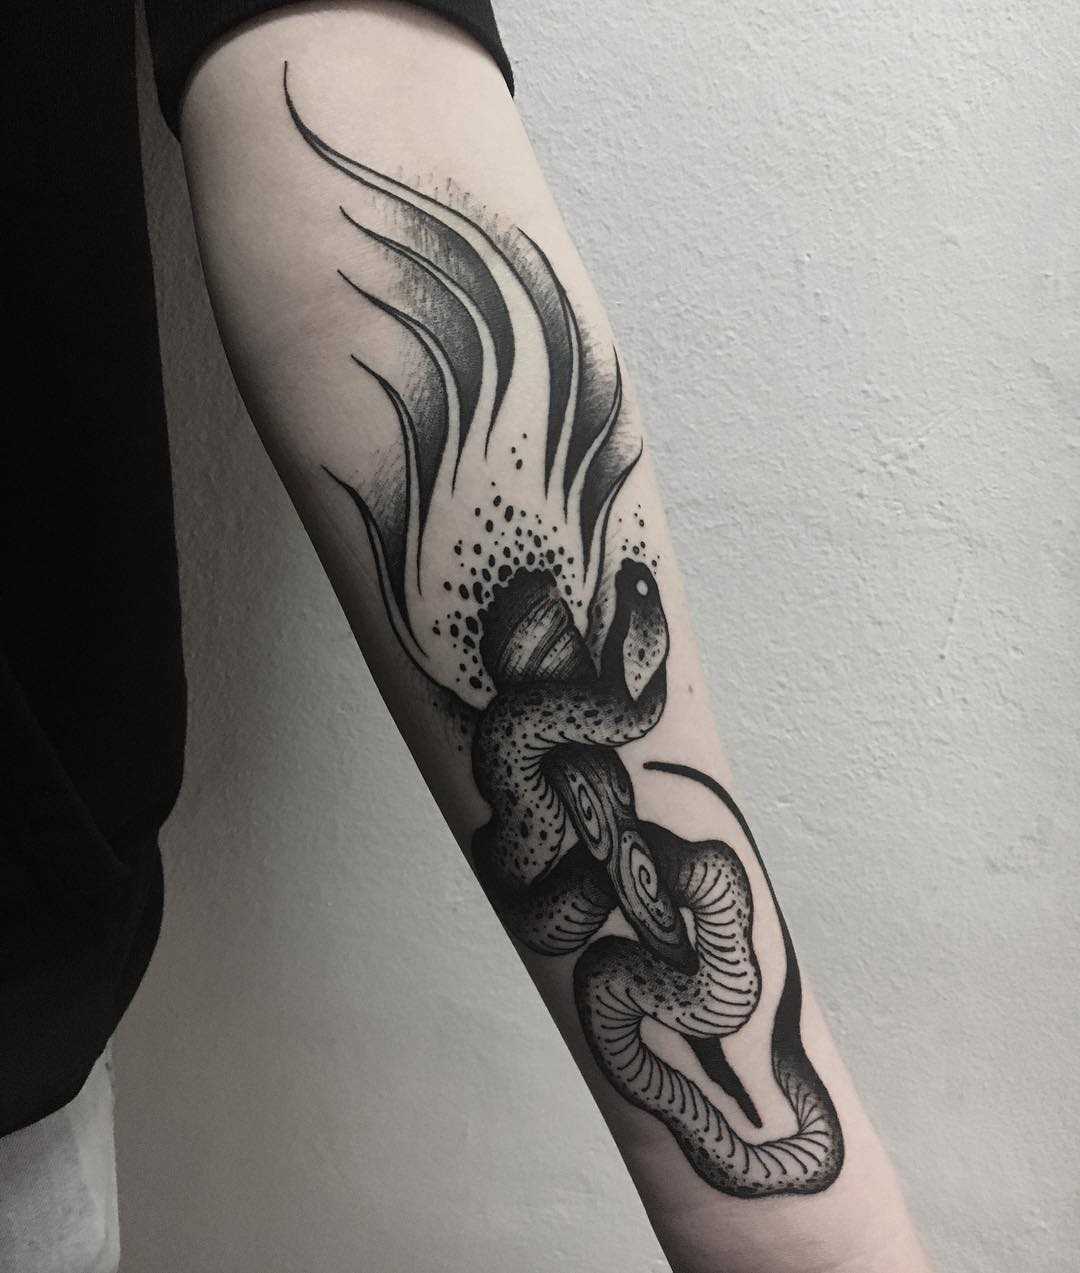 A tatuagem da tocha com uma cobra no antebraço cara